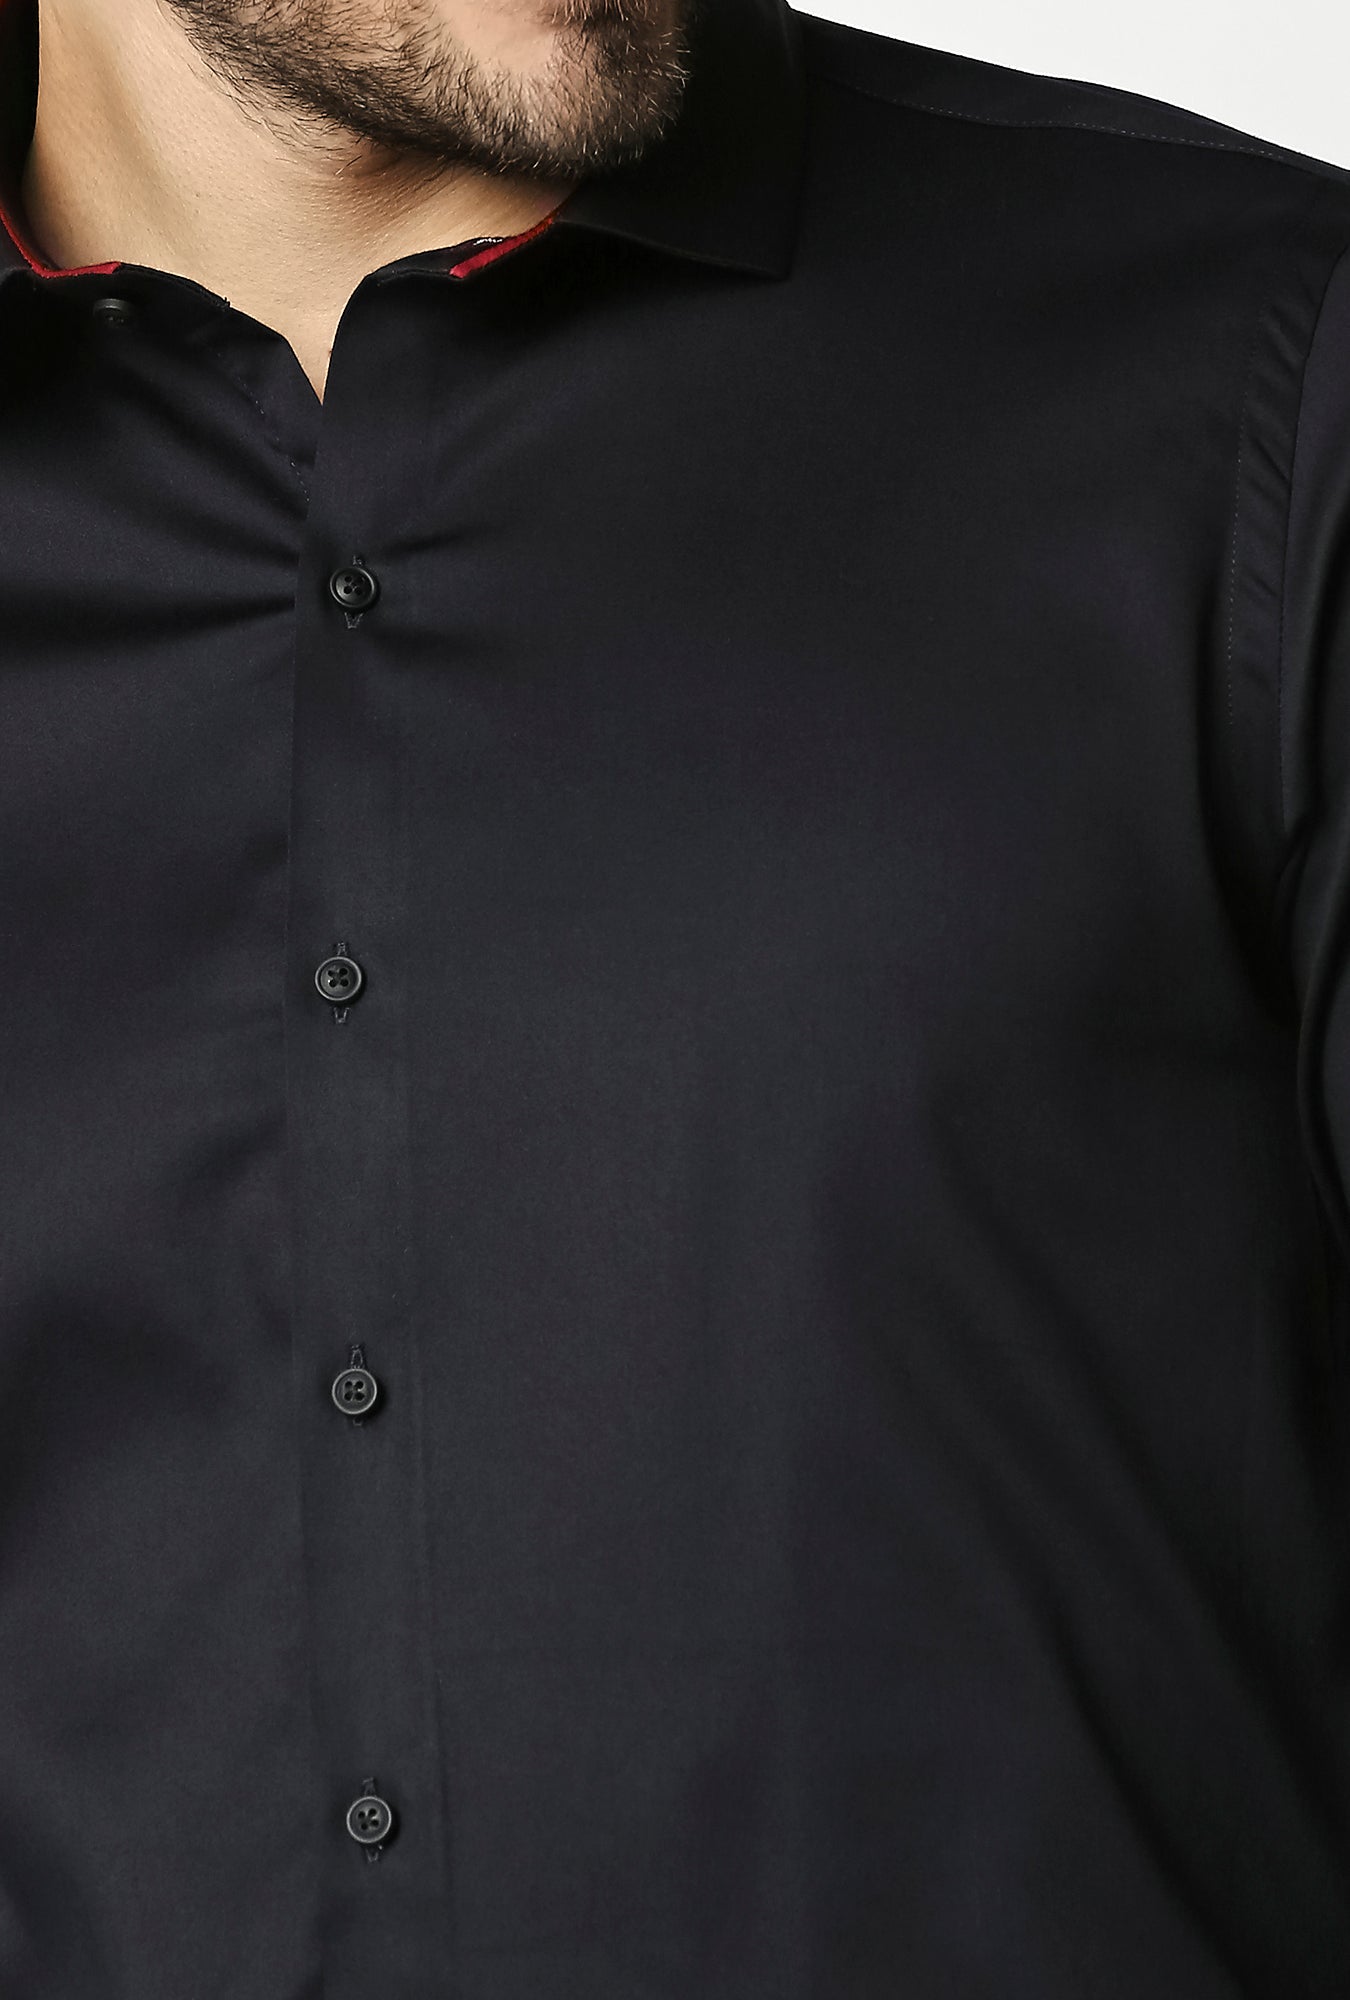 Fostino Plain Lycra Navy Full Sleeves Shirt - Fostino - Shirts